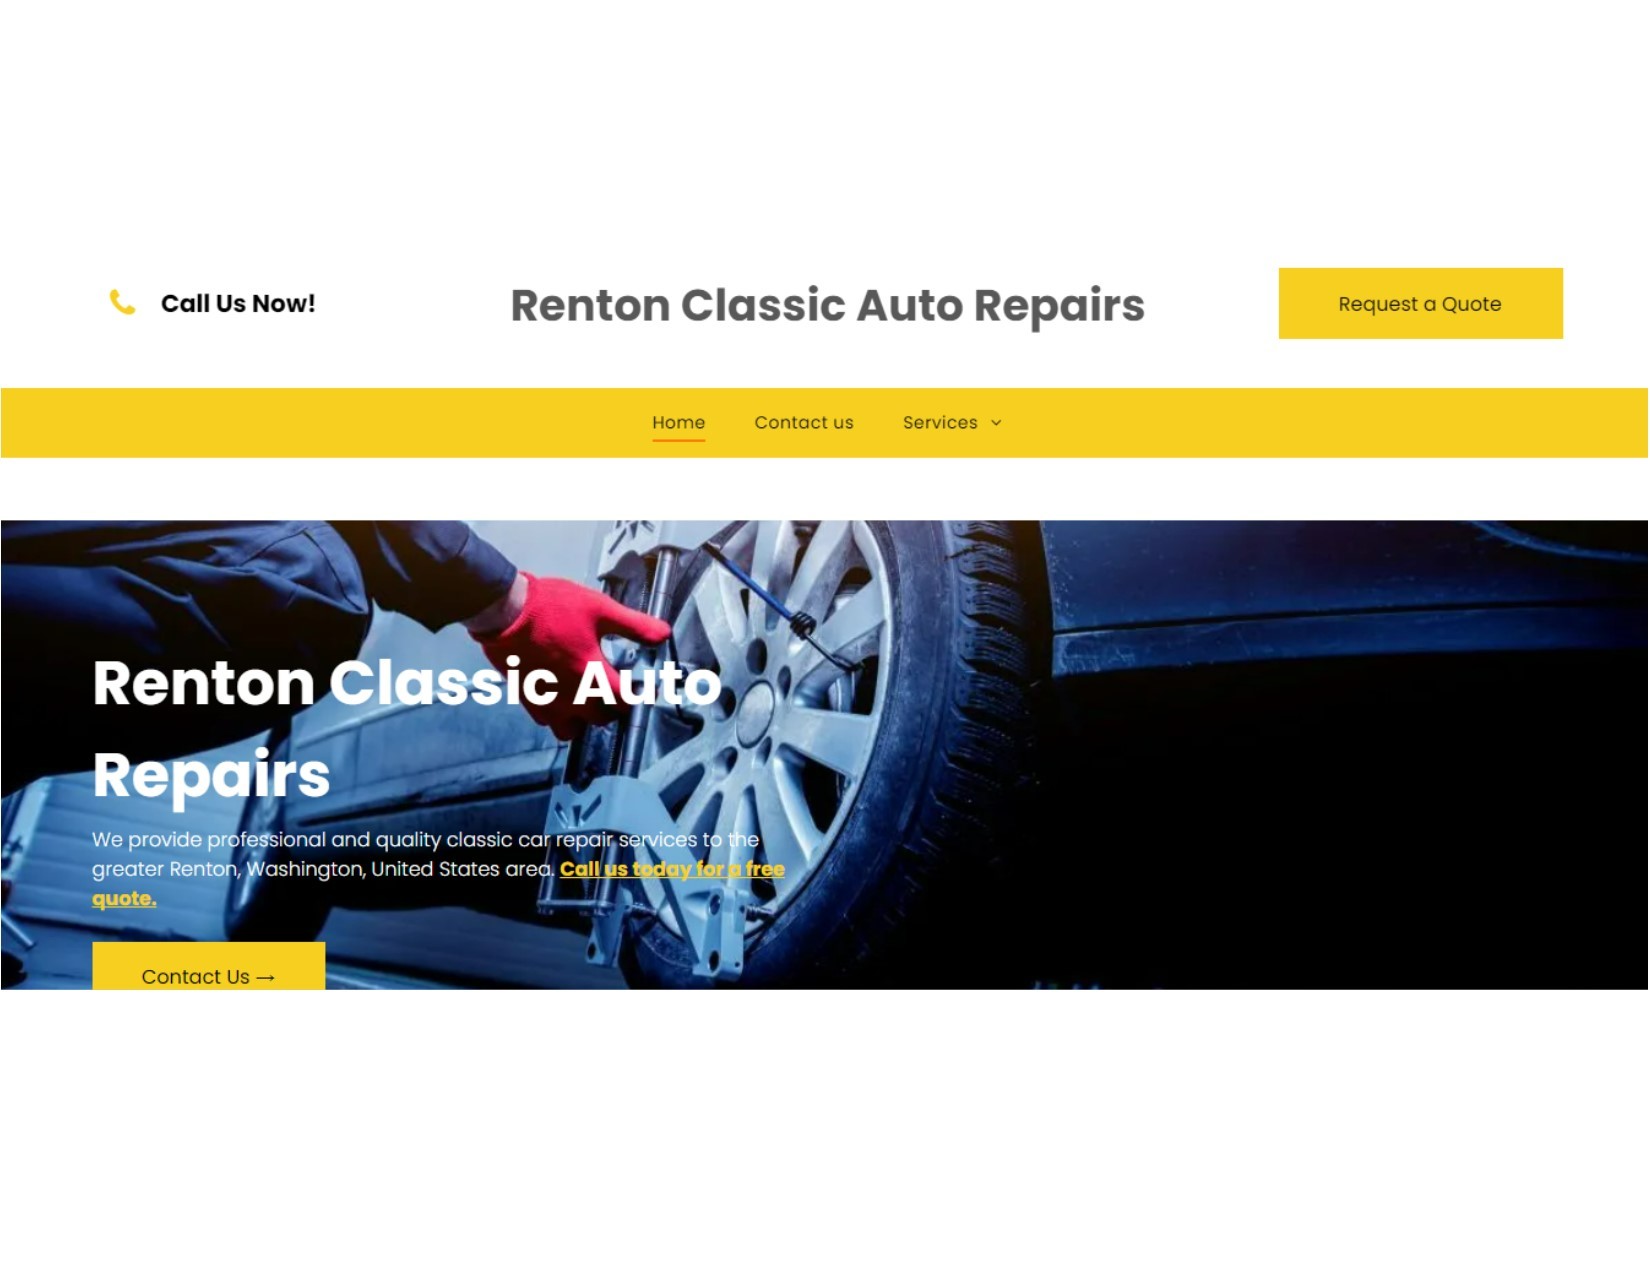 Renton Classic Auto Repairs